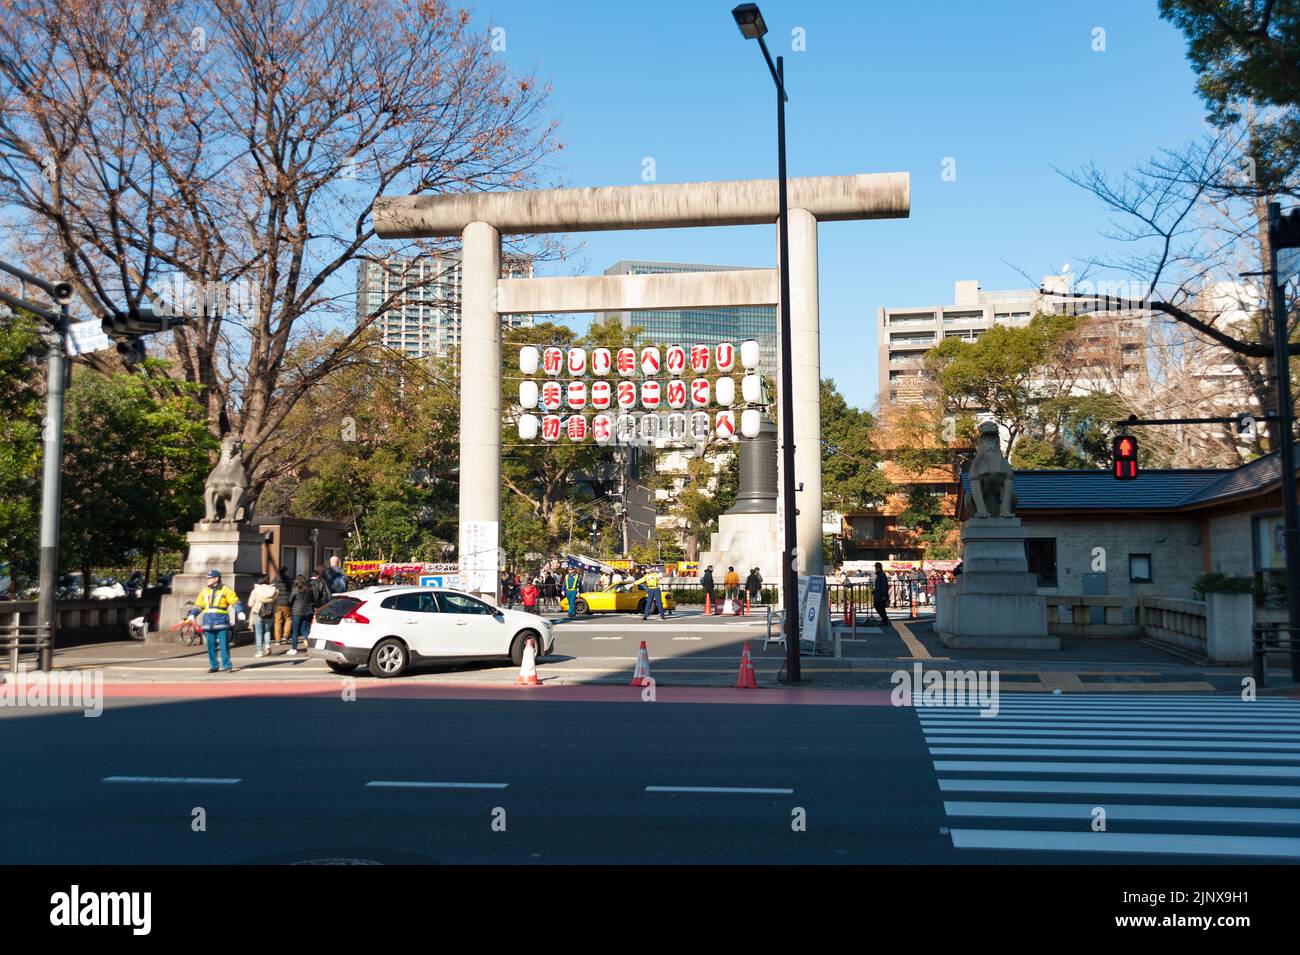 Città di Chiyoda, Tokyo, Giappone - 02 gennaio 2020: Ingresso parcheggio al santuario di Yasukuni, famoso e tradizionale santuario Shinto situato a Tokyo, Giappone. Hor Foto Stock